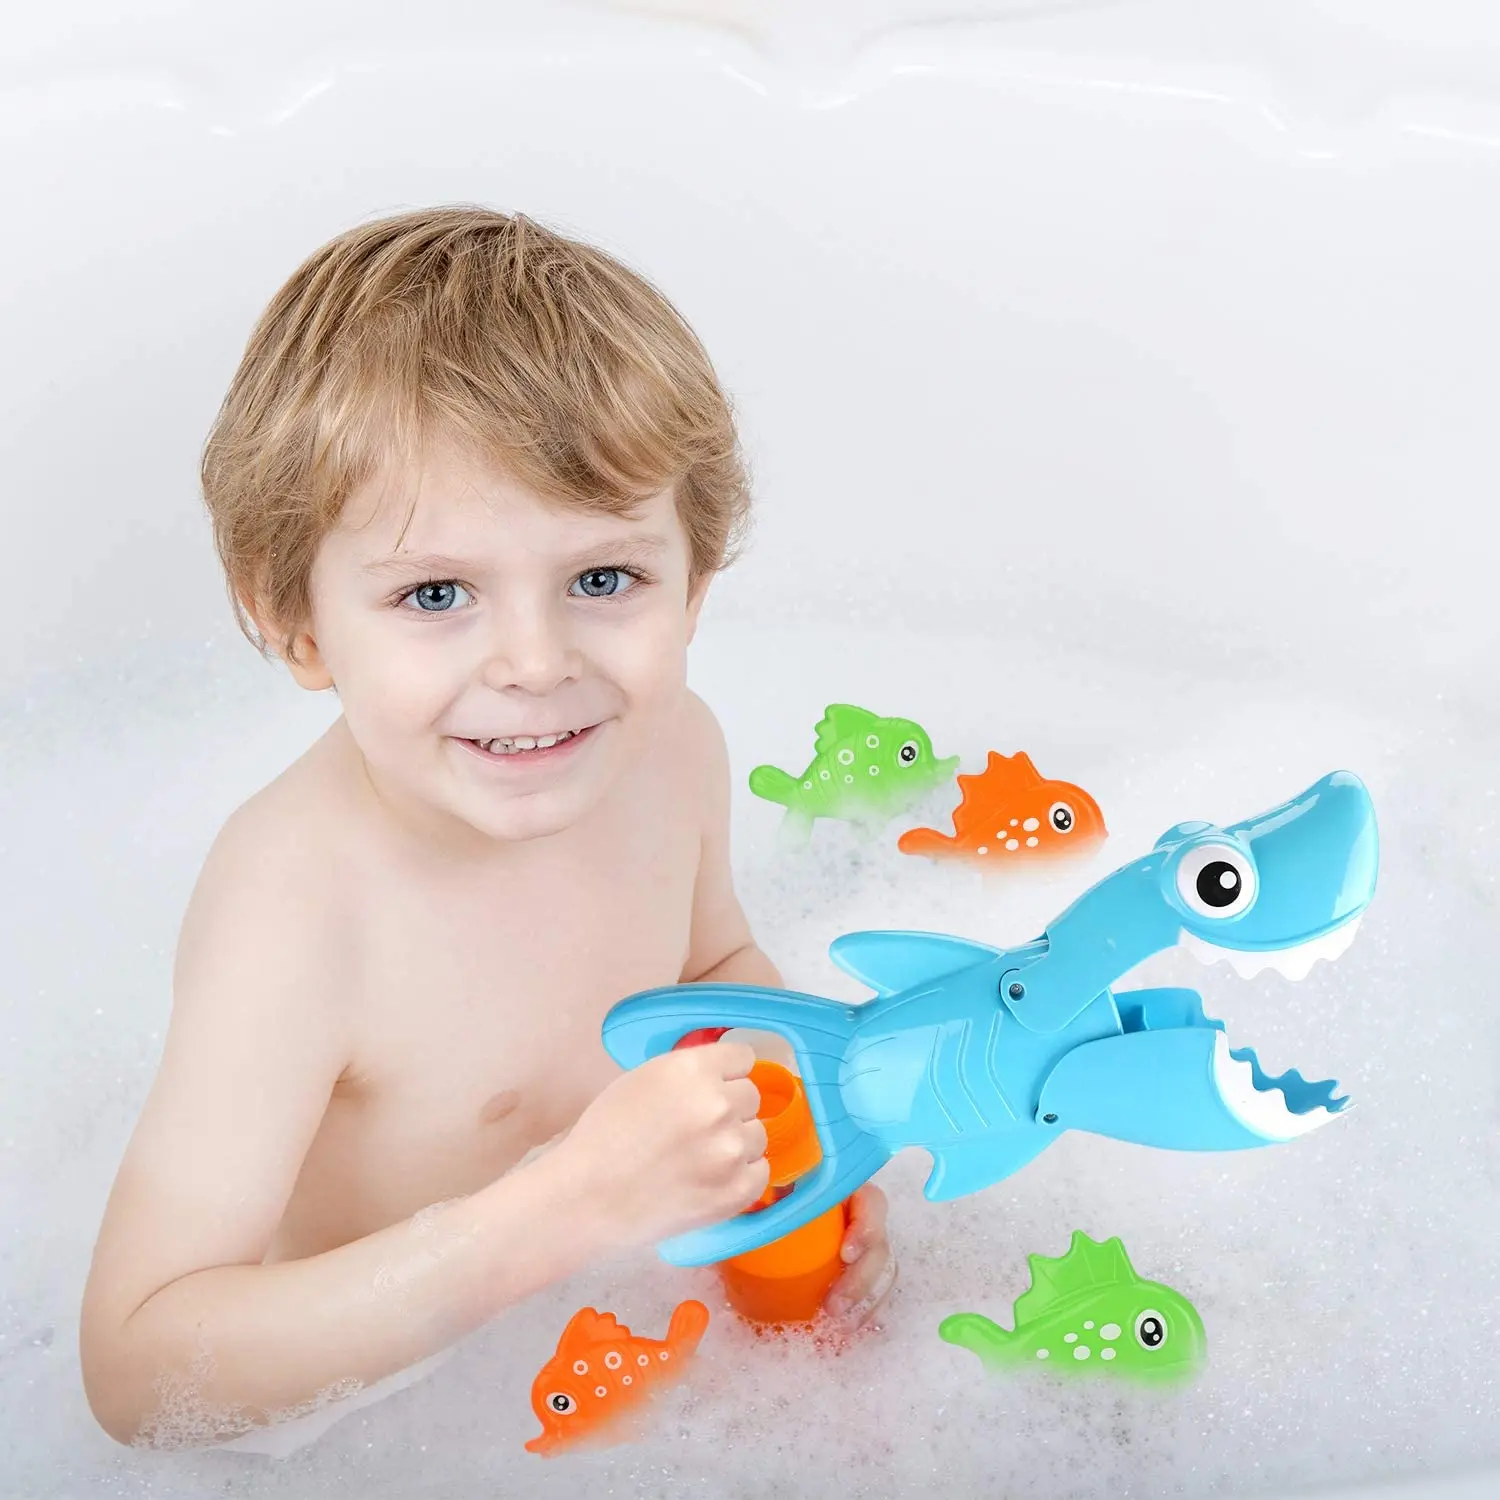 Игрушка для ванны «акула». Baby Shark игрушка для купания. Акула для купания в ванной. Интерактивная игрушка для ванны Junior "Baby Shark", акула - Pets & Robo Alive. Ребенок рыбы мальчик